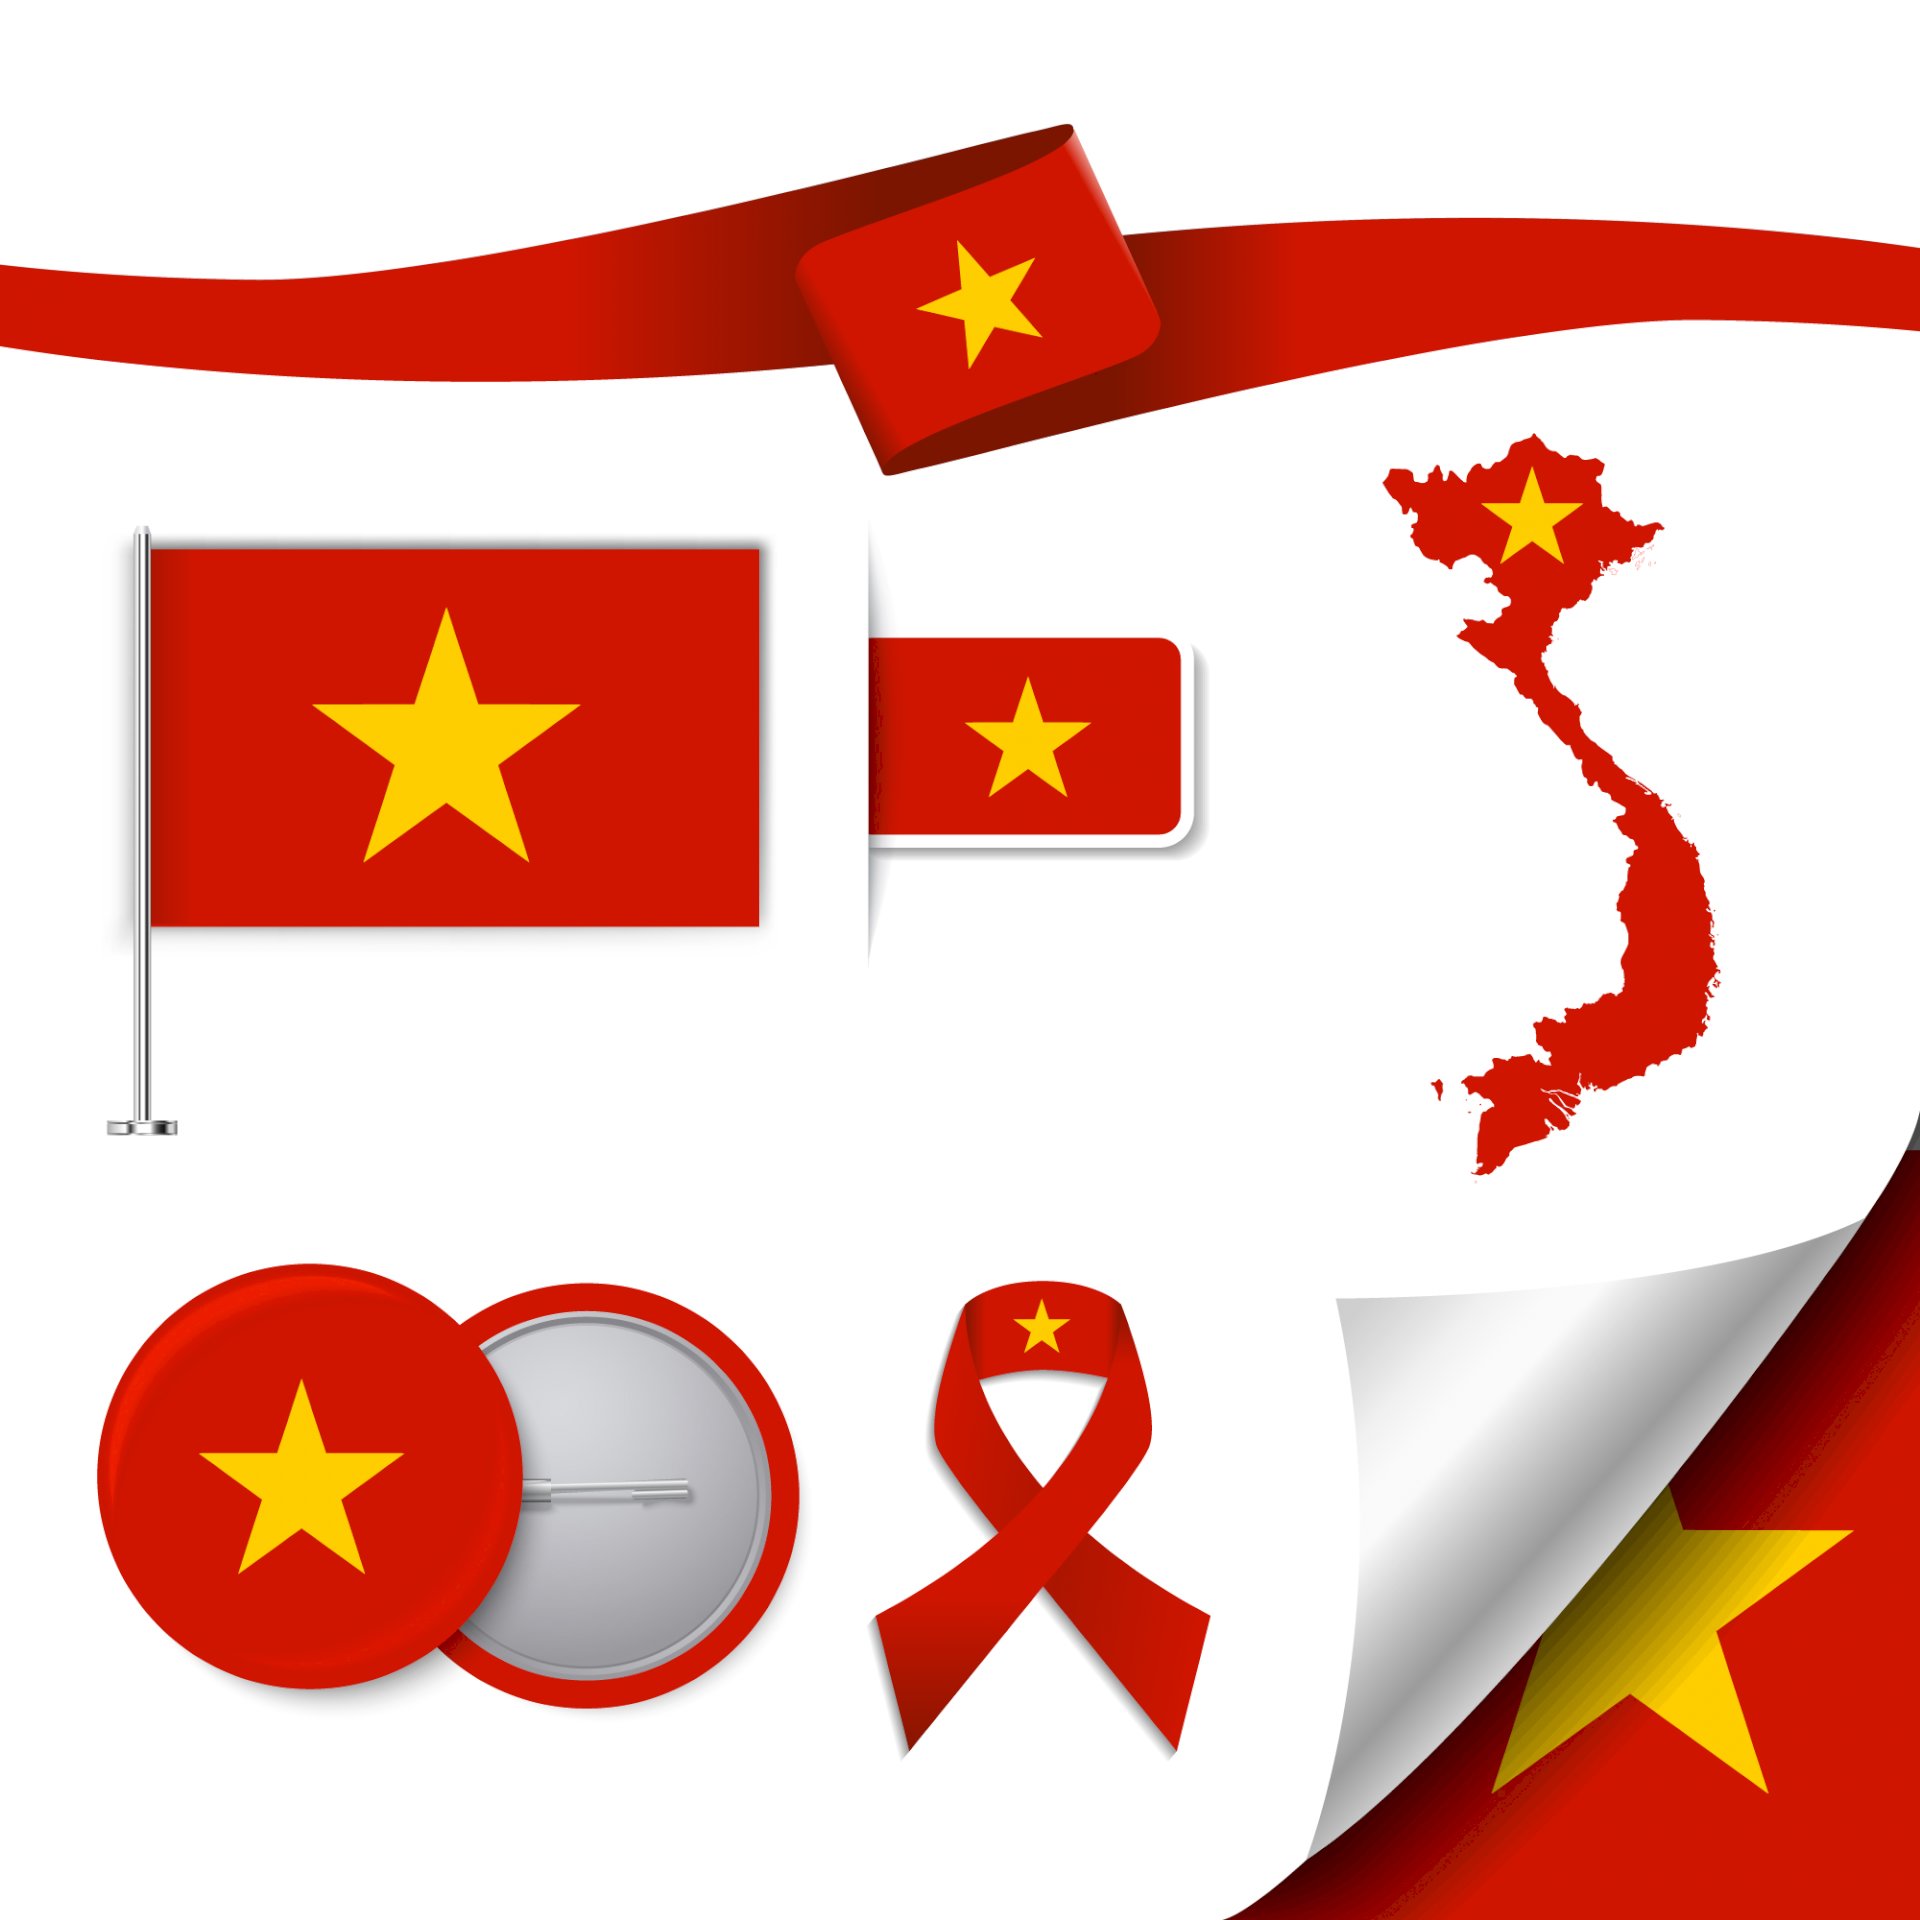 Logo lá cờ Việt Nam 2024: Hãy đắm mình trong bức tranh tuyệt đẹp của Logo lá cờ Việt Nam 2024 – một sản phẩm công nghệ và nghệ thuật độc đáo mang thông điệp về sự kết hợp của truyền thống và hiện đại. Với việc cải tiến và trang trí thêm các chi tiết hấp dẫn, Logo lá cờ Việt Nam 2024 góp phần thể hiện bức tranh đẹp về đất nước và con người Việt Nam đang tiến lên với niềm tin và hy vọng.